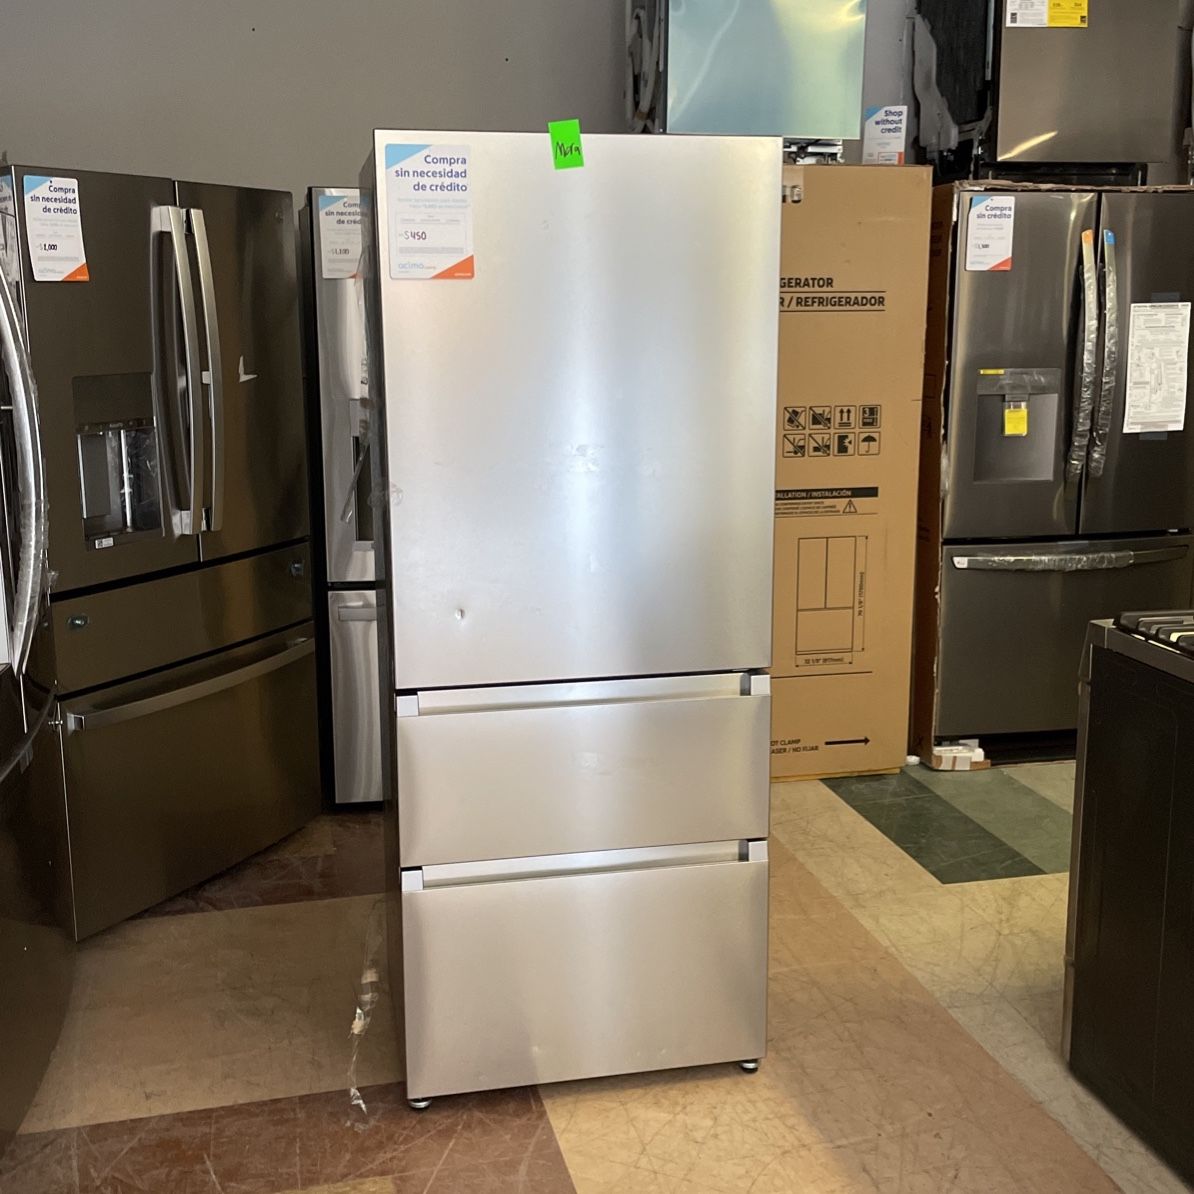 Mora 15 Cu.Ft 3 Door Counter-Depth Bottom Mount Refrigerator